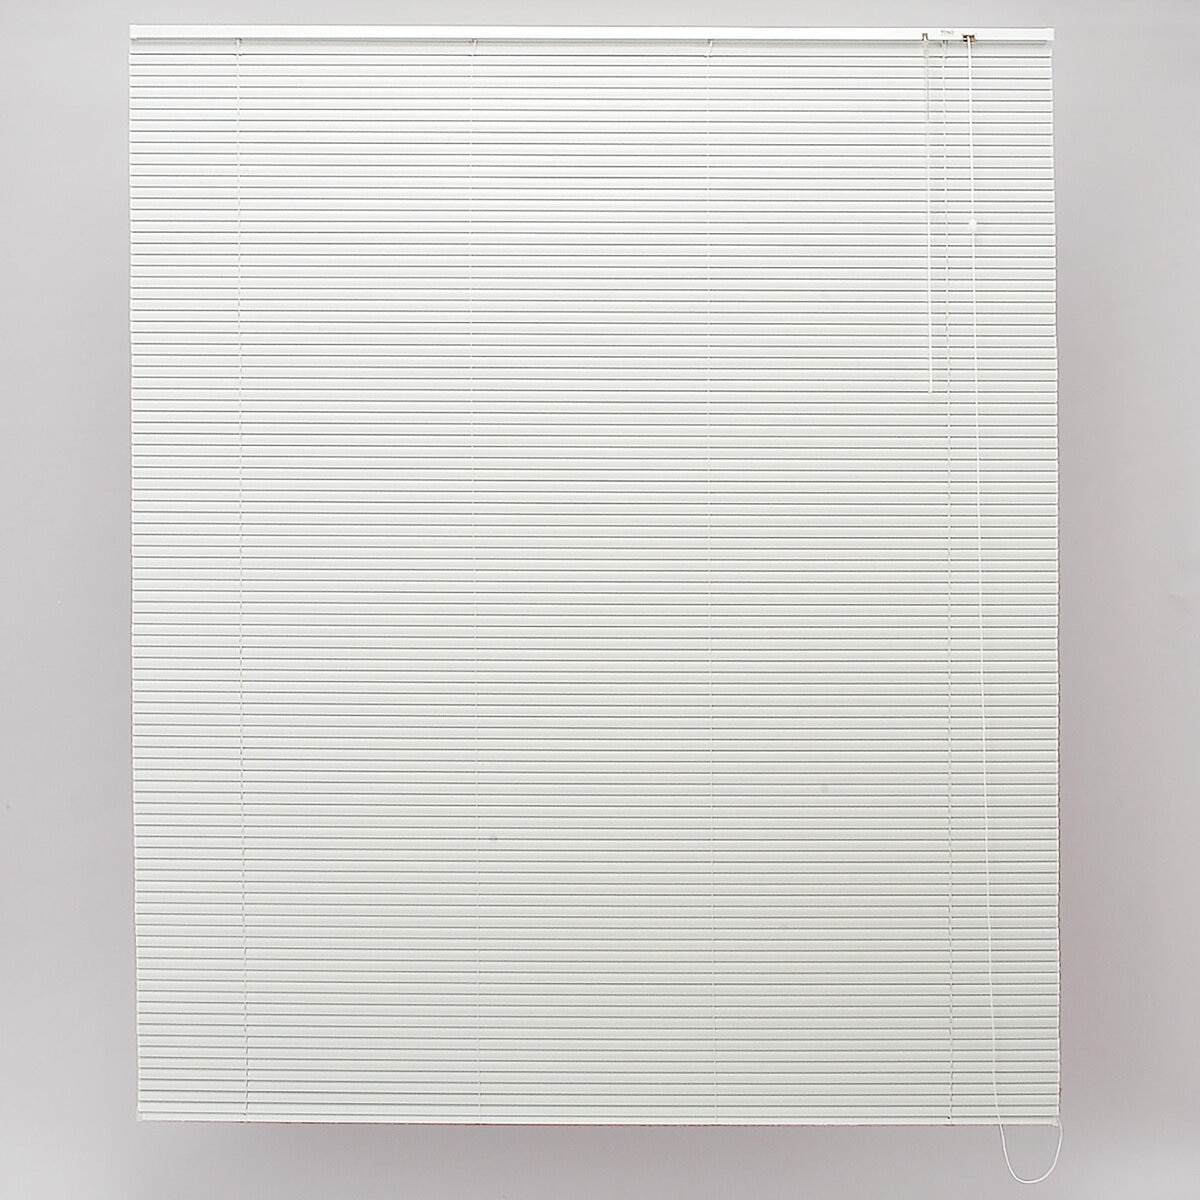 トーソー スポーラR IB アルミブラインド 84 cm x 183 cm ホワイト